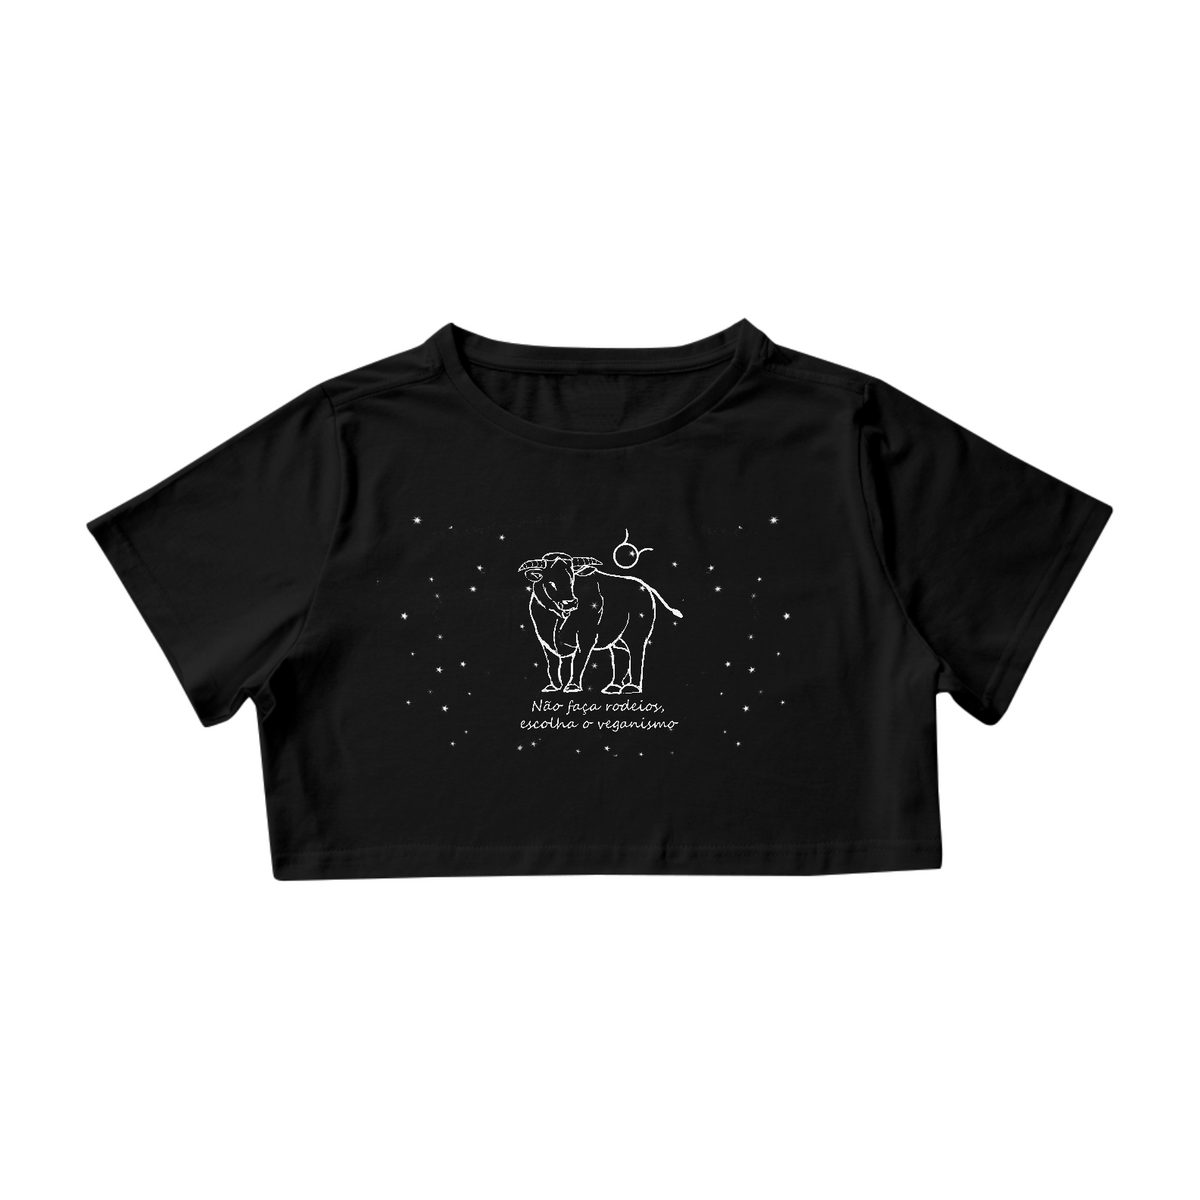 Nome do produto: Camiseta Cropped | Touro | Não faça rodeios, escolha o veganismo | P&B